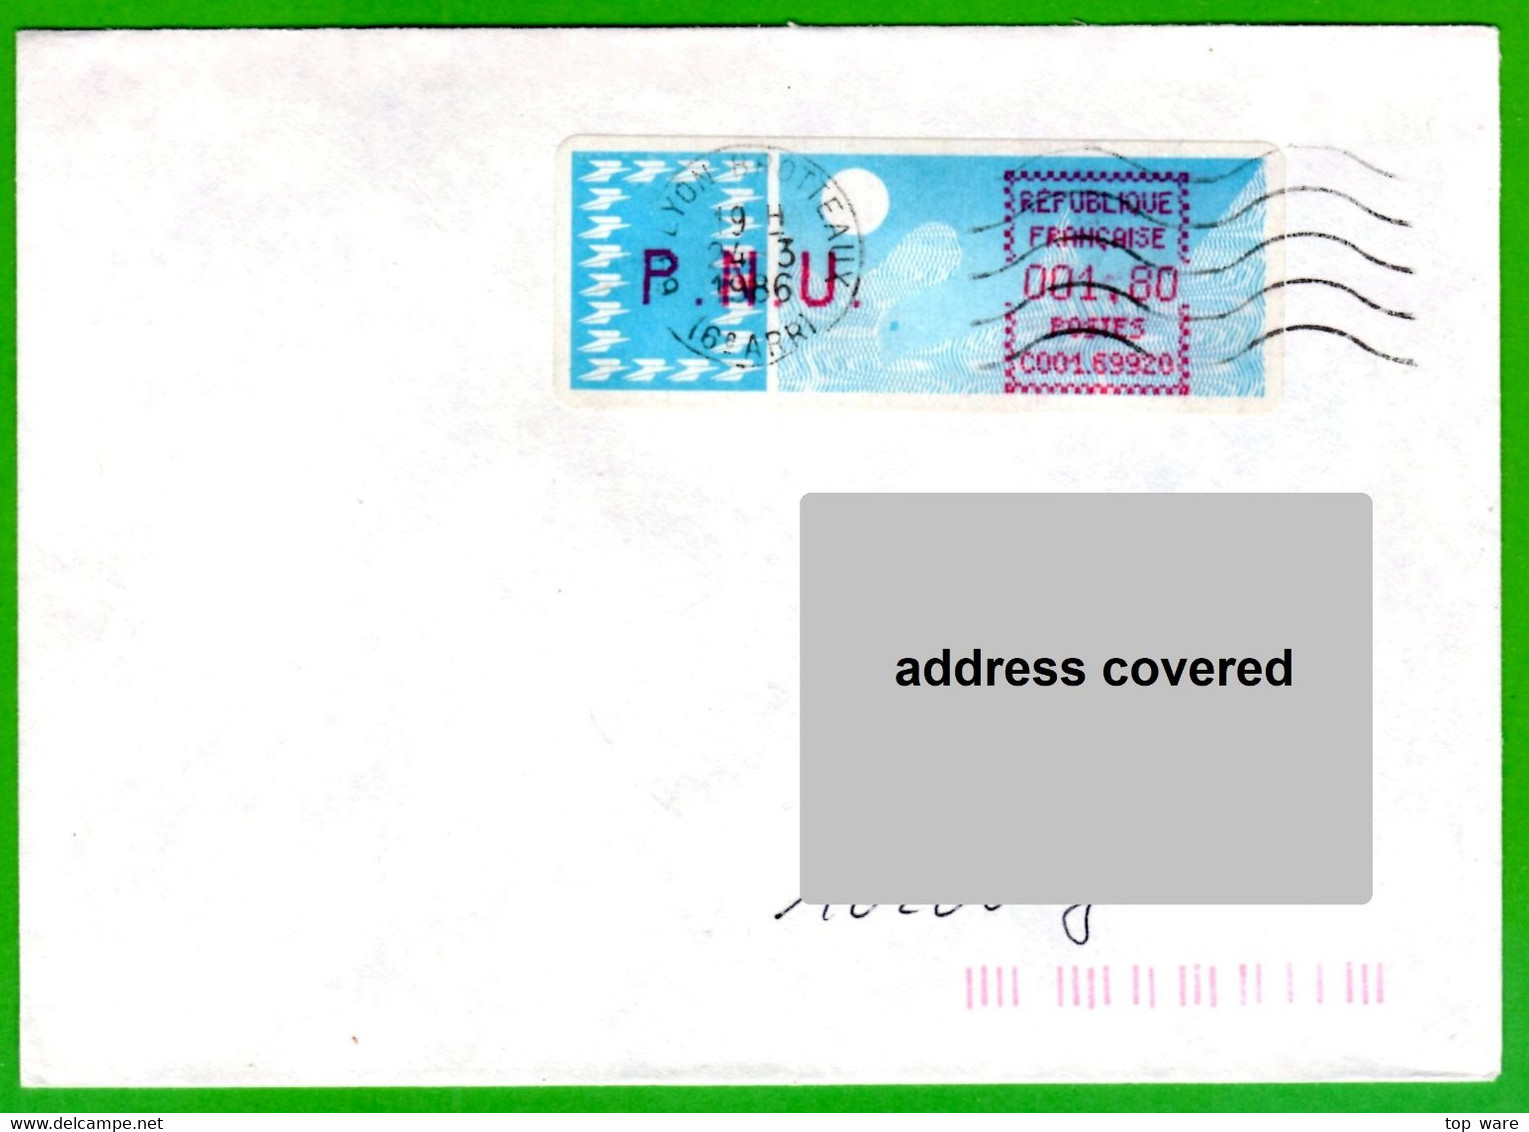 France LSA ATM Stamps C001.69920 / Michel 6.6 Zd / PNU 1,80 On Cover 24.3.86 Lyon Brotteaux / Distributeurs - 1985 « Carrier » Papier